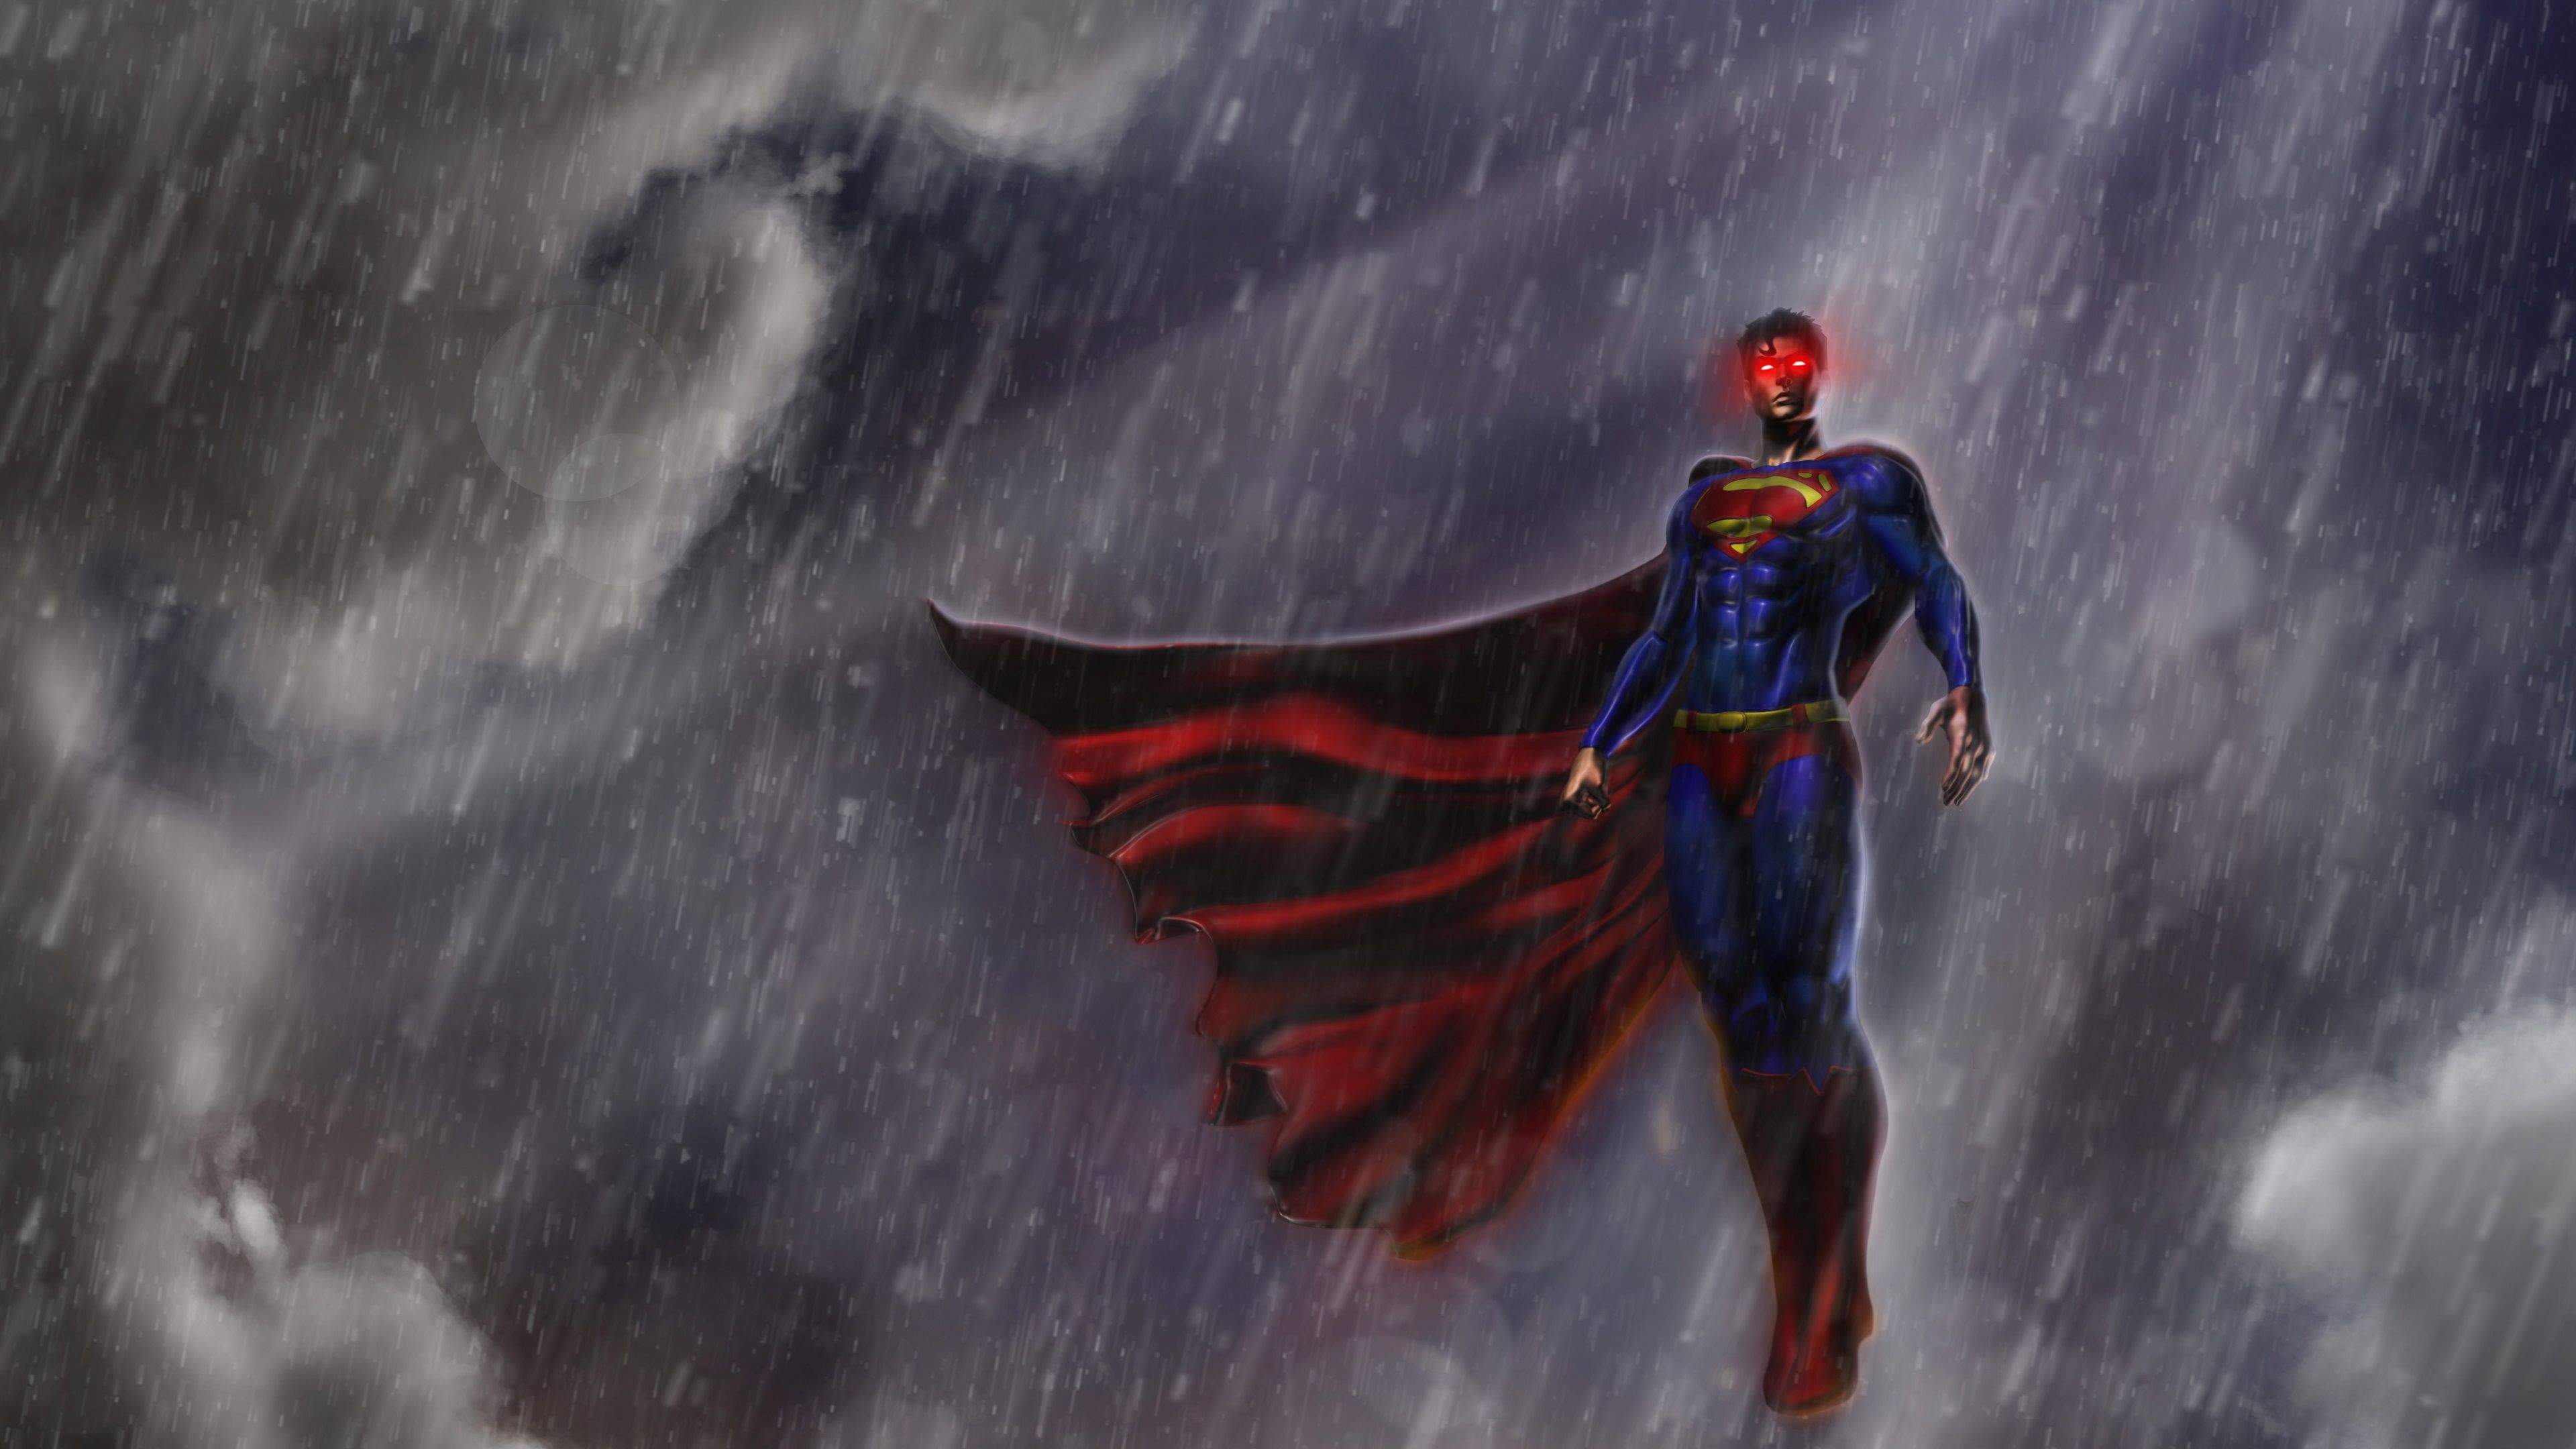 superman 4k image for desktop background. Superman wallpaper, Justice league artwork, Superman wallpaper logo